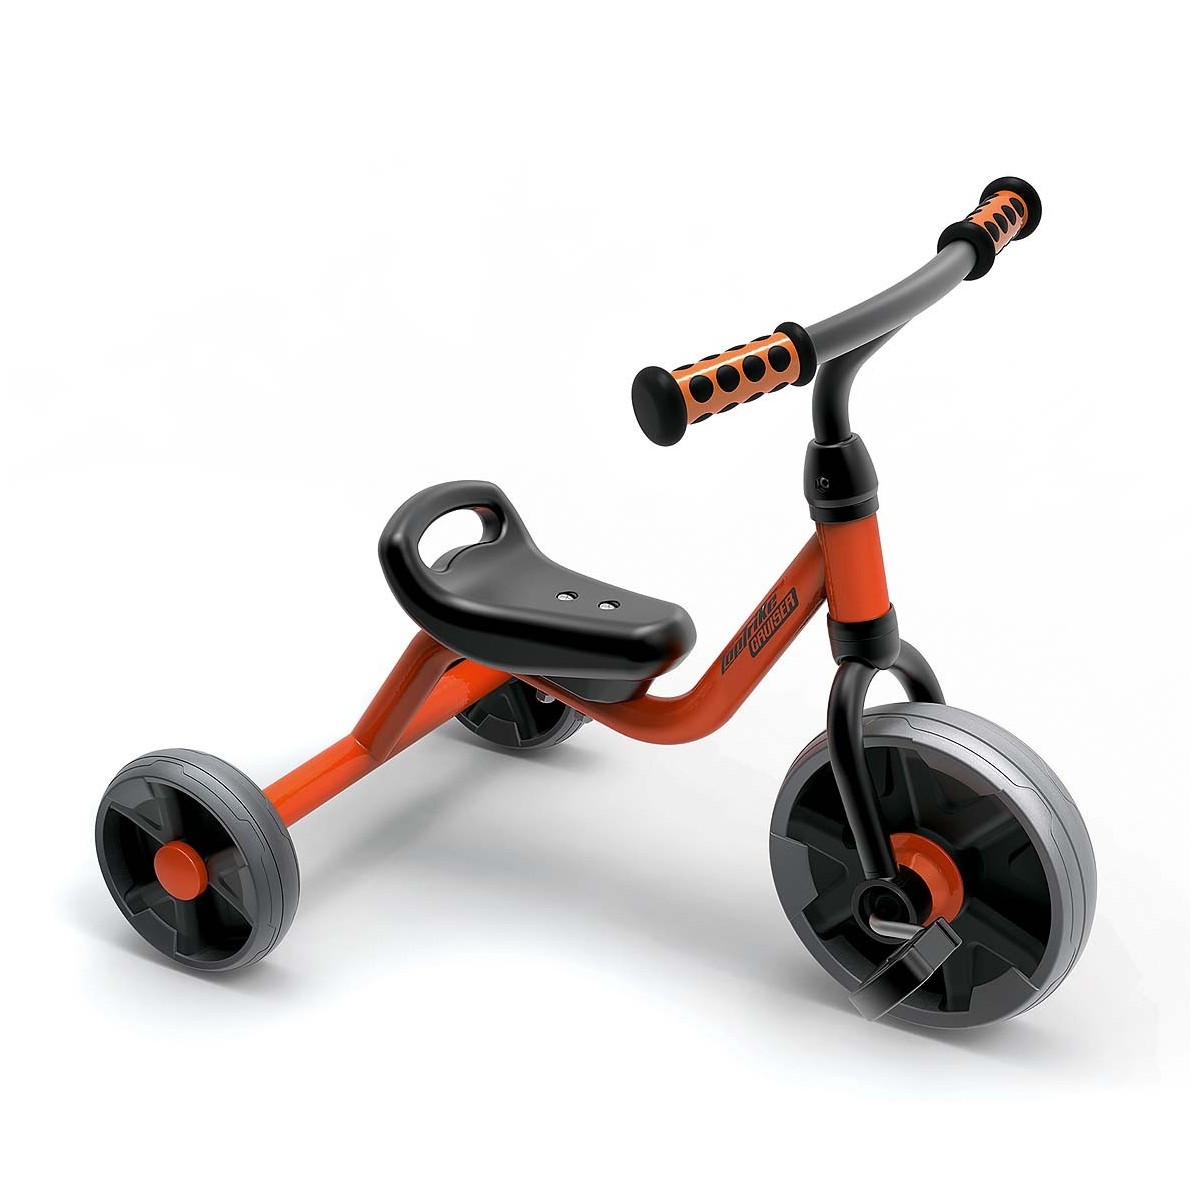 Mini Tricycle Top Trike - 1 - Avec le mini-tricycle de Top Trike, vous pouvez commencer tout de suite à rouler.
Il est parfaite